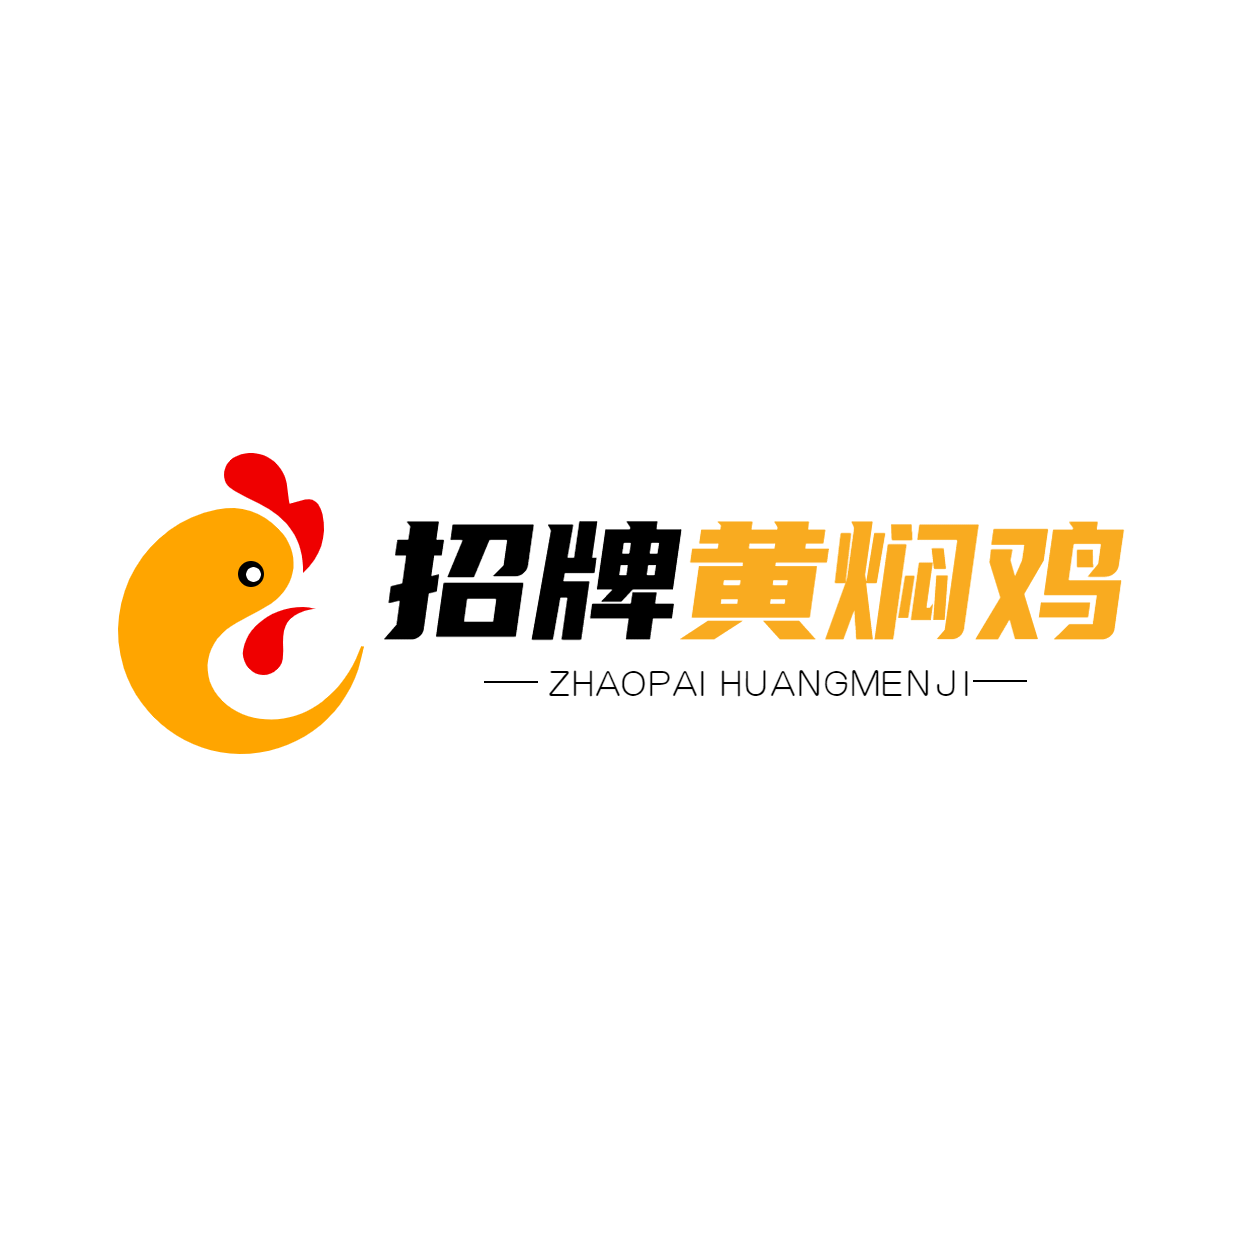 中餐正餐品牌宣传LOGO简约微信头像预览效果